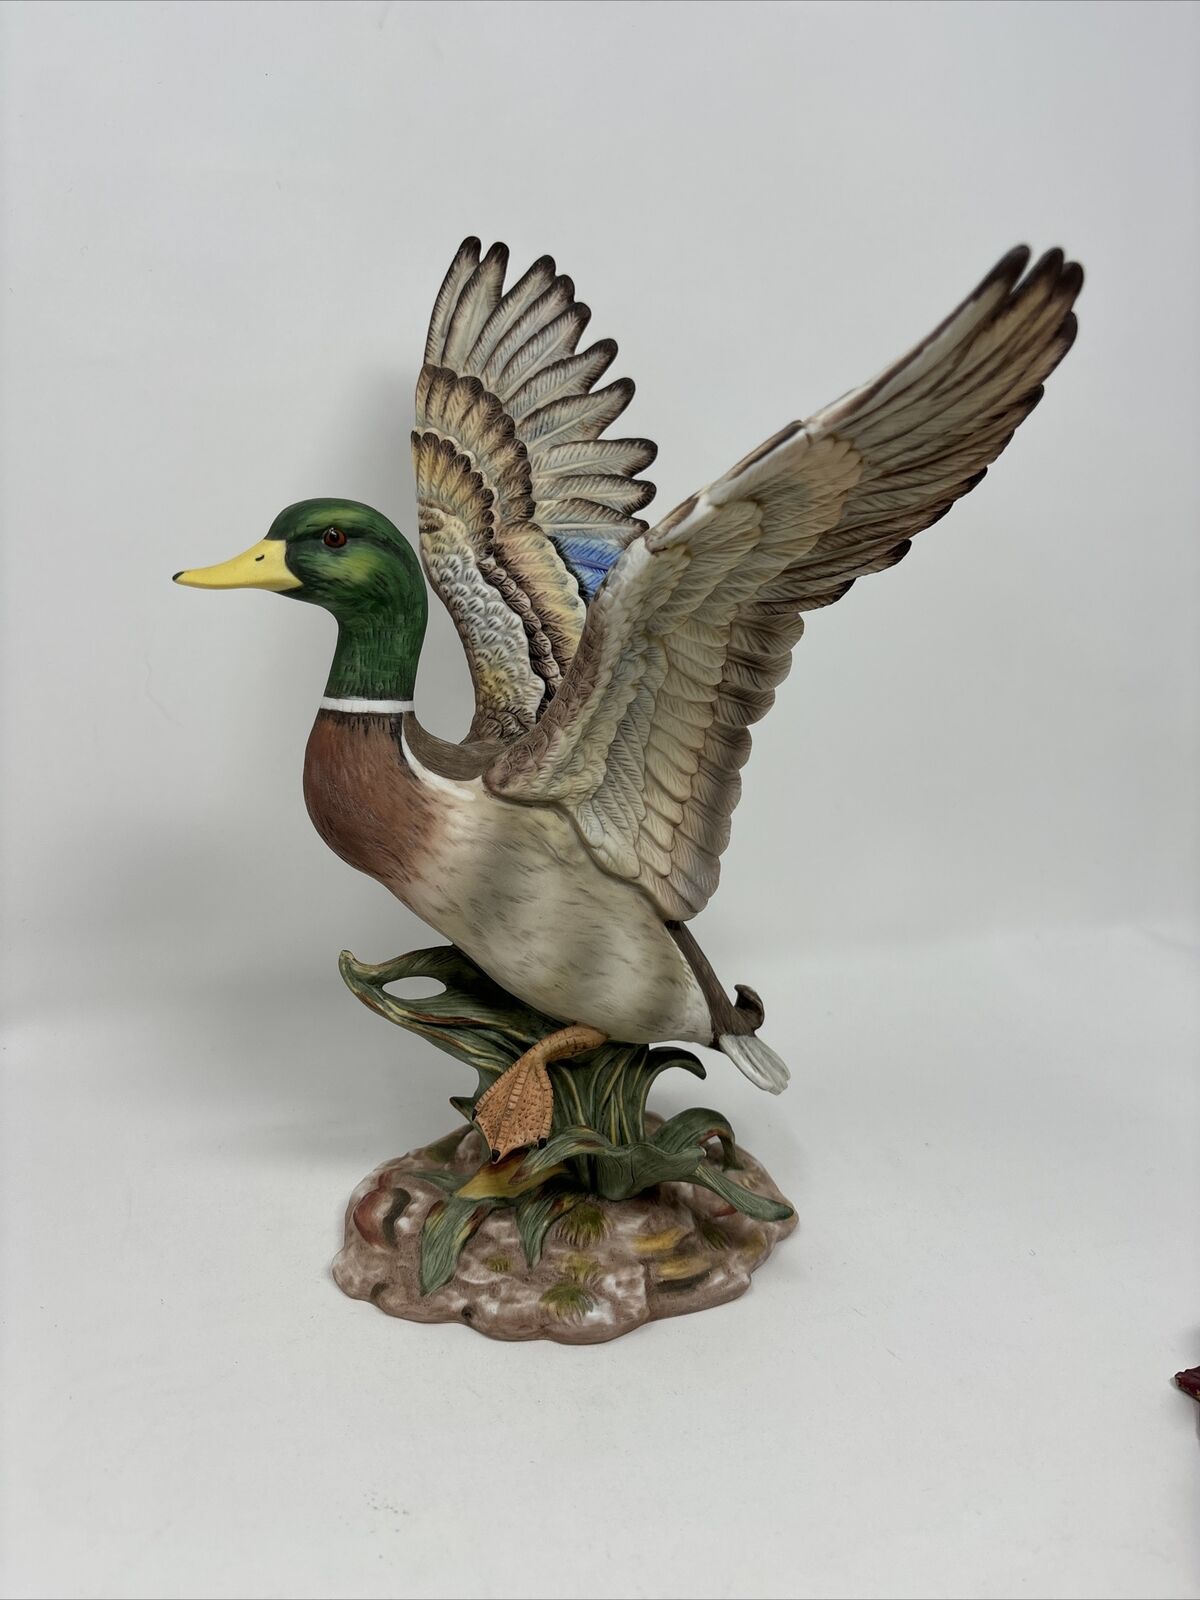 Homco - Masterpiece Porcelain - Mallard Duck Figurine #8838 - 1984